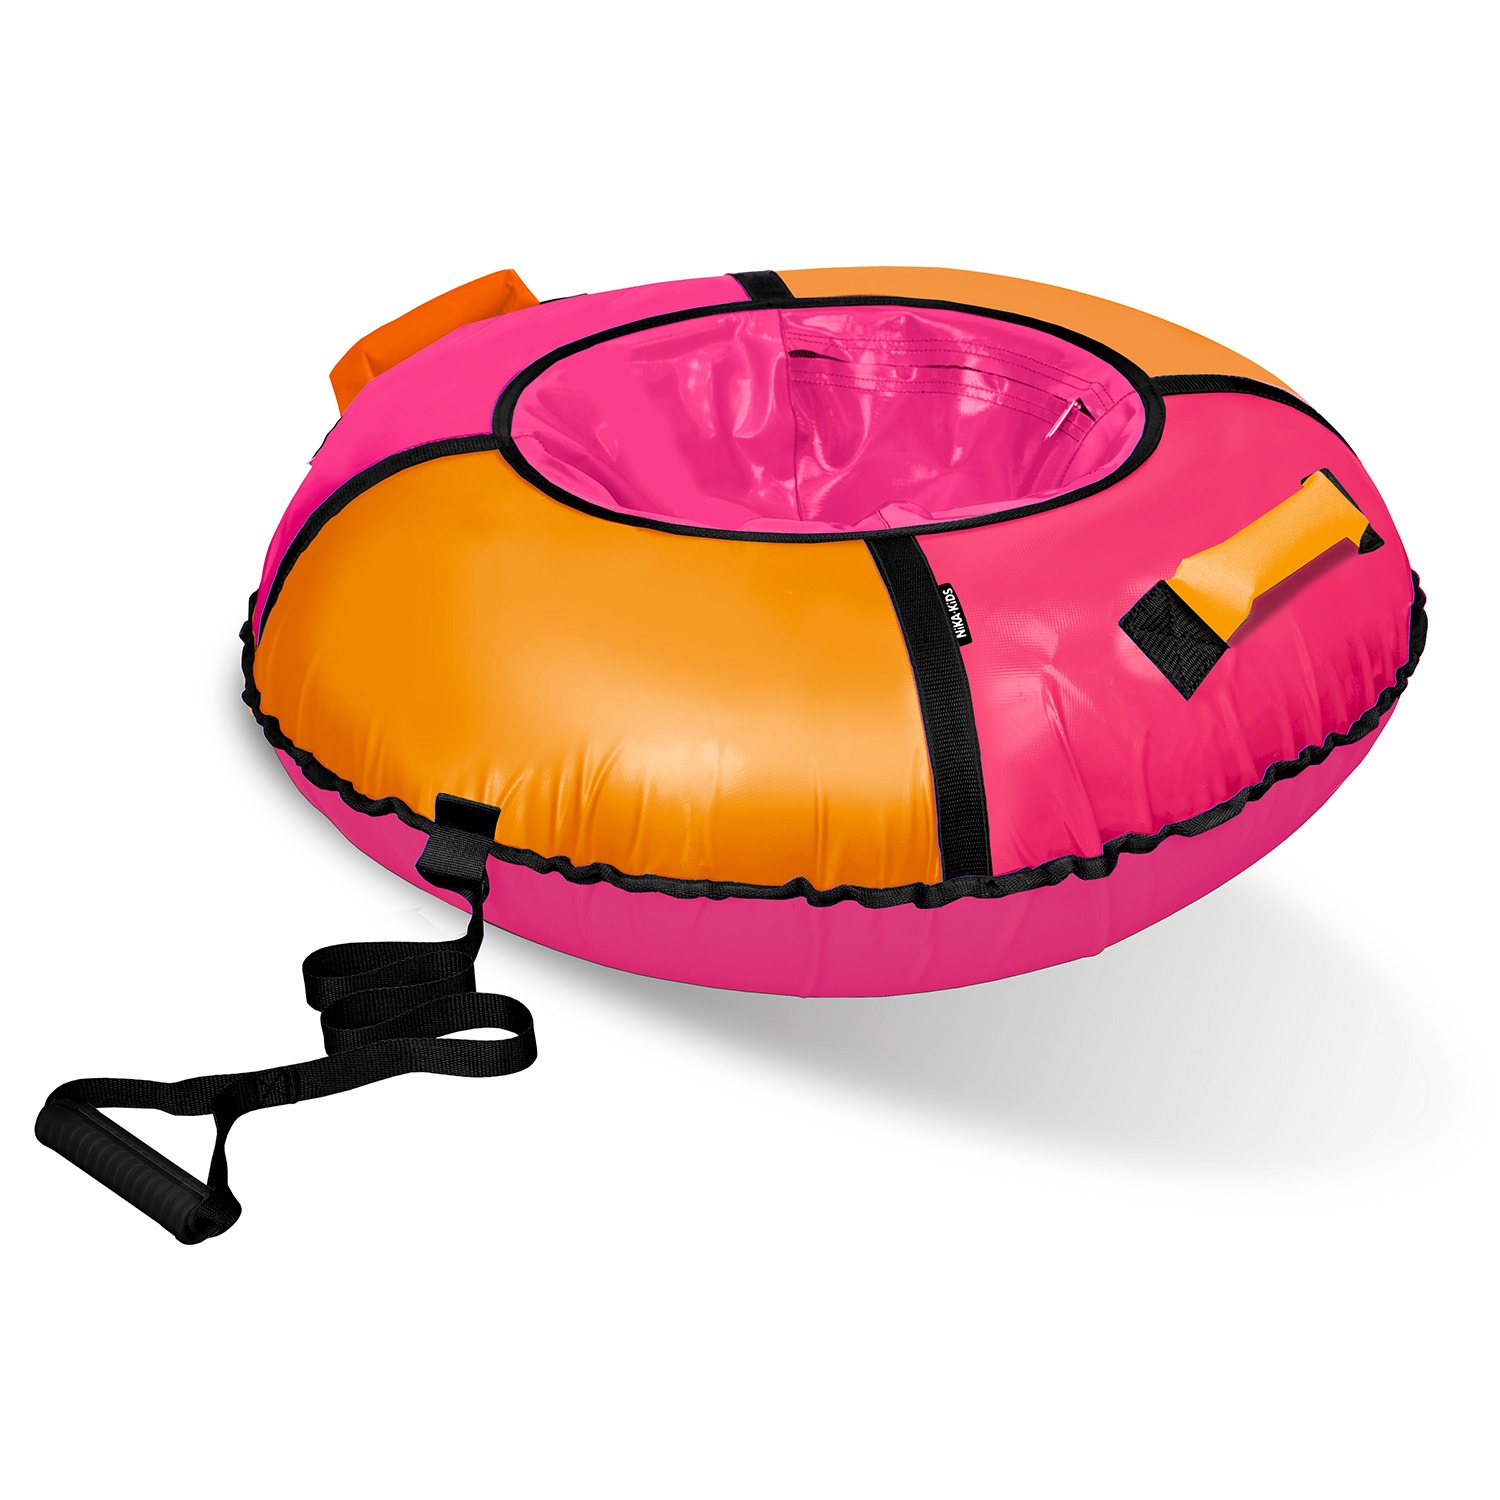 Тюбинг ватрушка Nika Классик ТБ1К-85/РО розовый/оранжевый тарелка круглая wilmax spiral d 28 см оранжевый